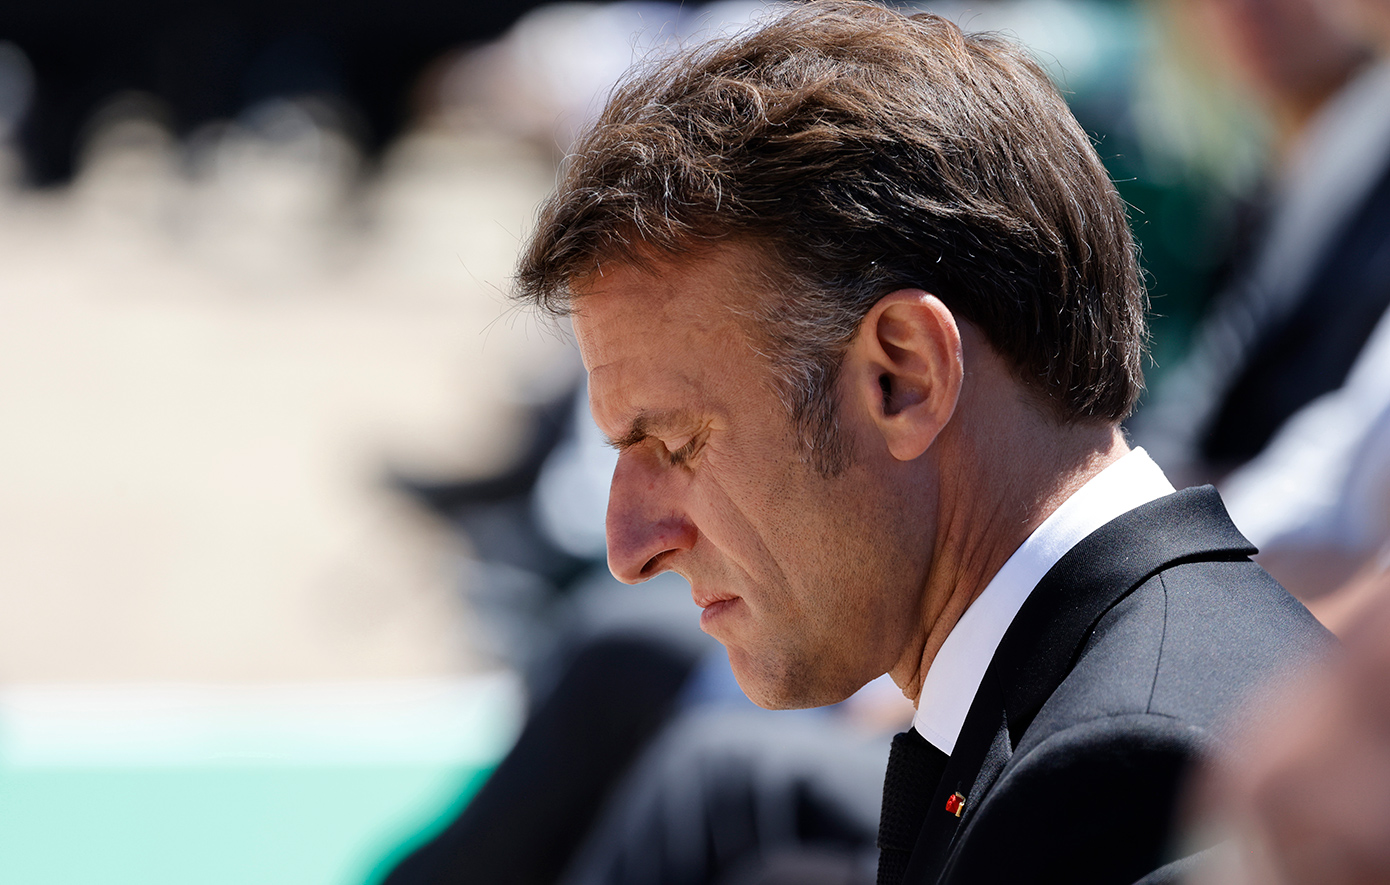 Ανακατεύεται η πολιτική τράπουλα στη Γαλλία μετά την απόφαση Μακρόν για πρόωρες βουλευτικές εκλογές